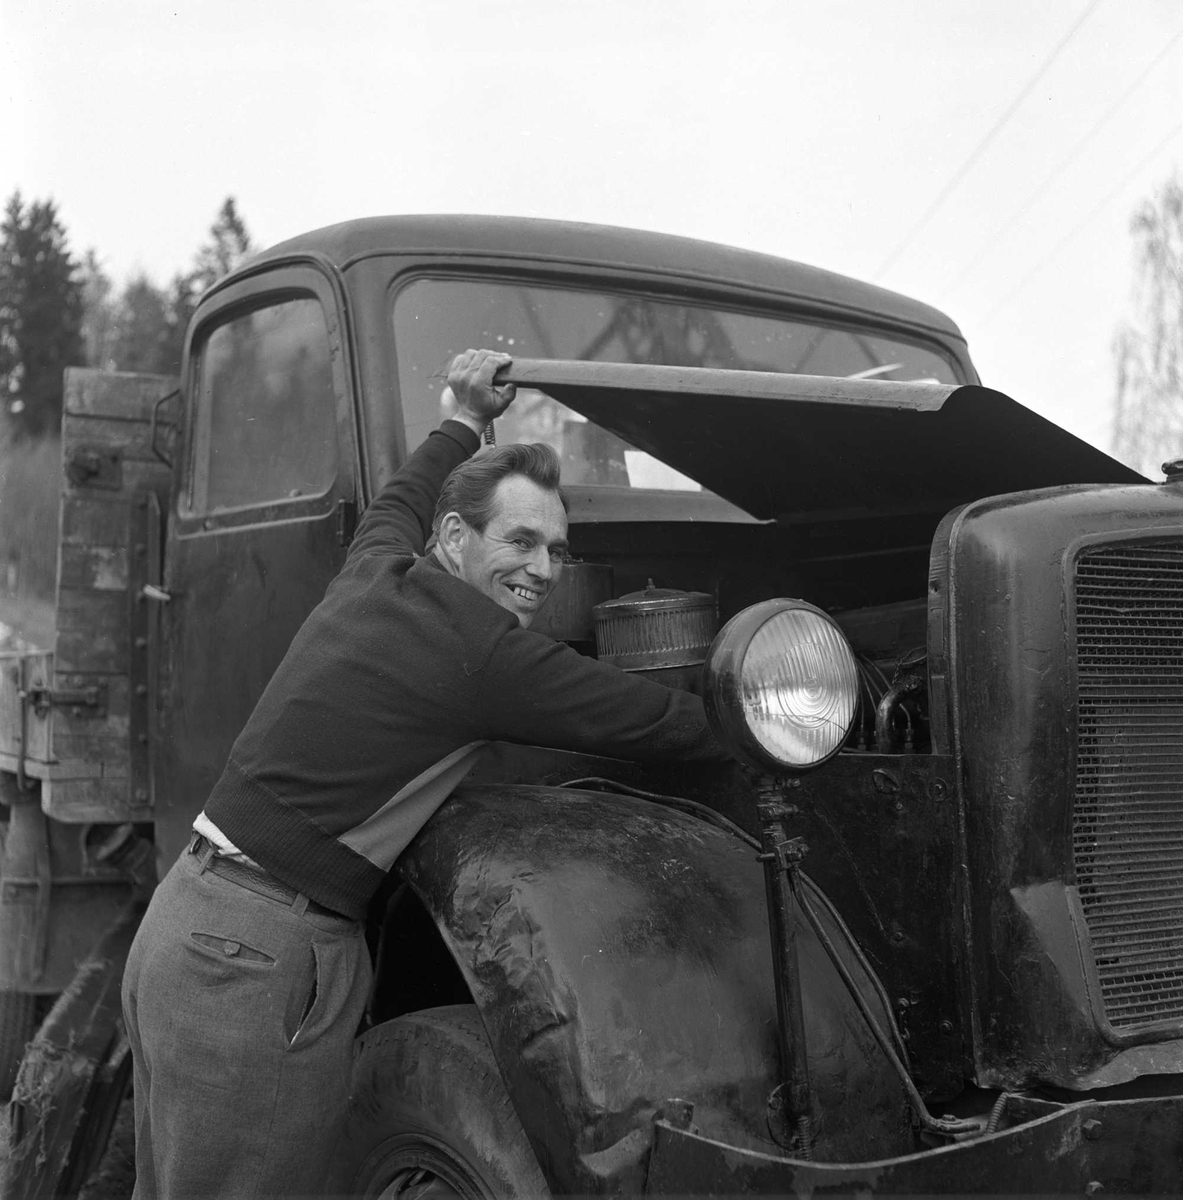 Mann ved lastebil, 1956.